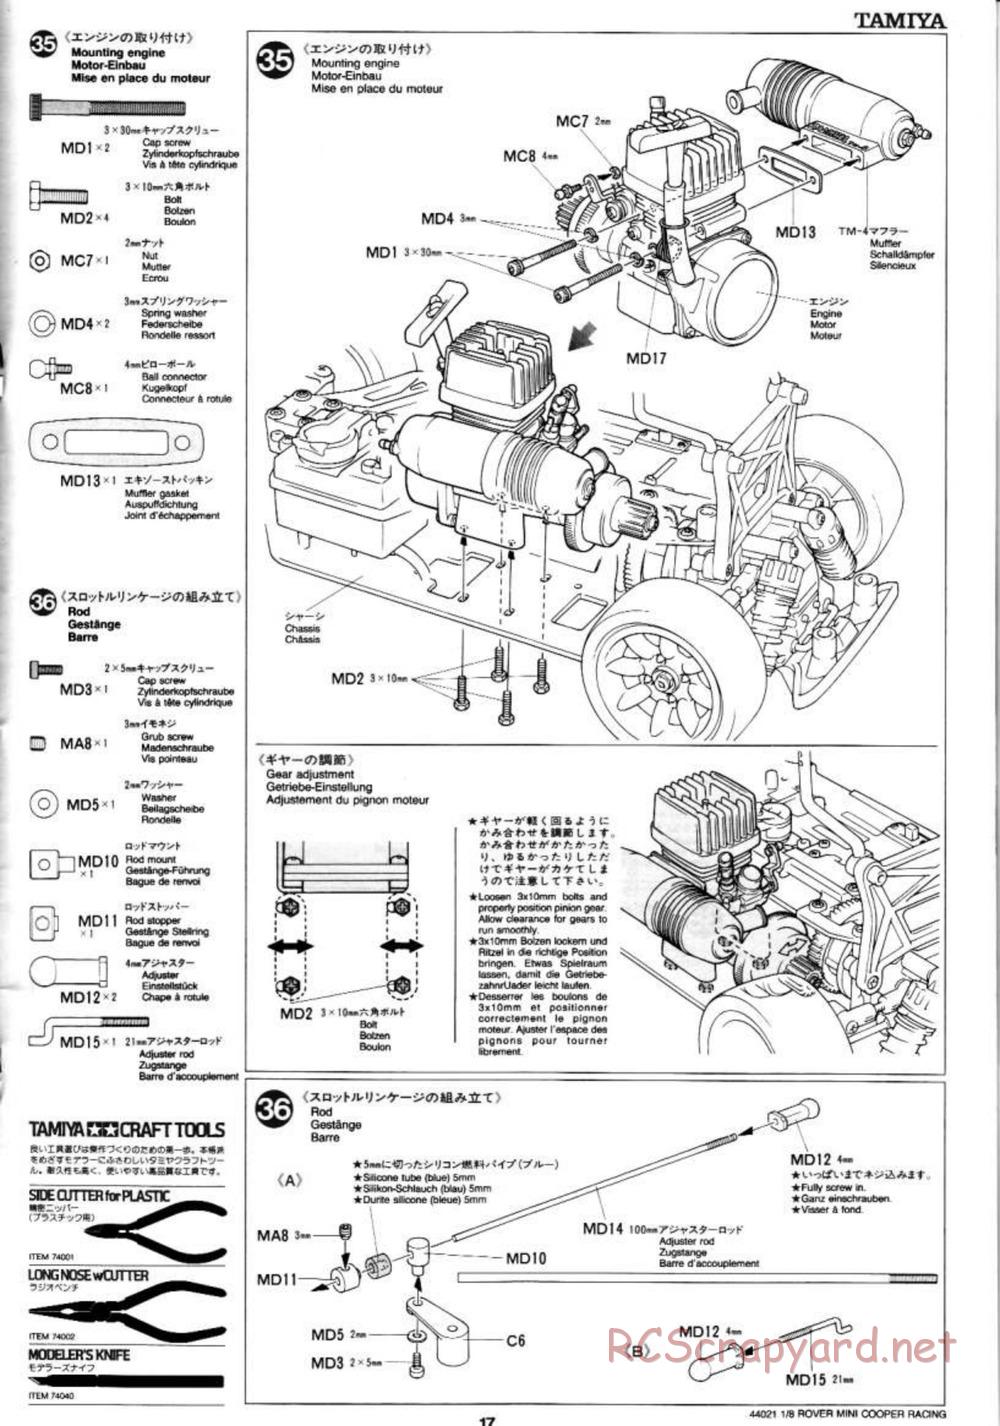 Tamiya - Rover Mini Cooper Racing - TG10 Mk.1 Chassis - Manual - Page 17